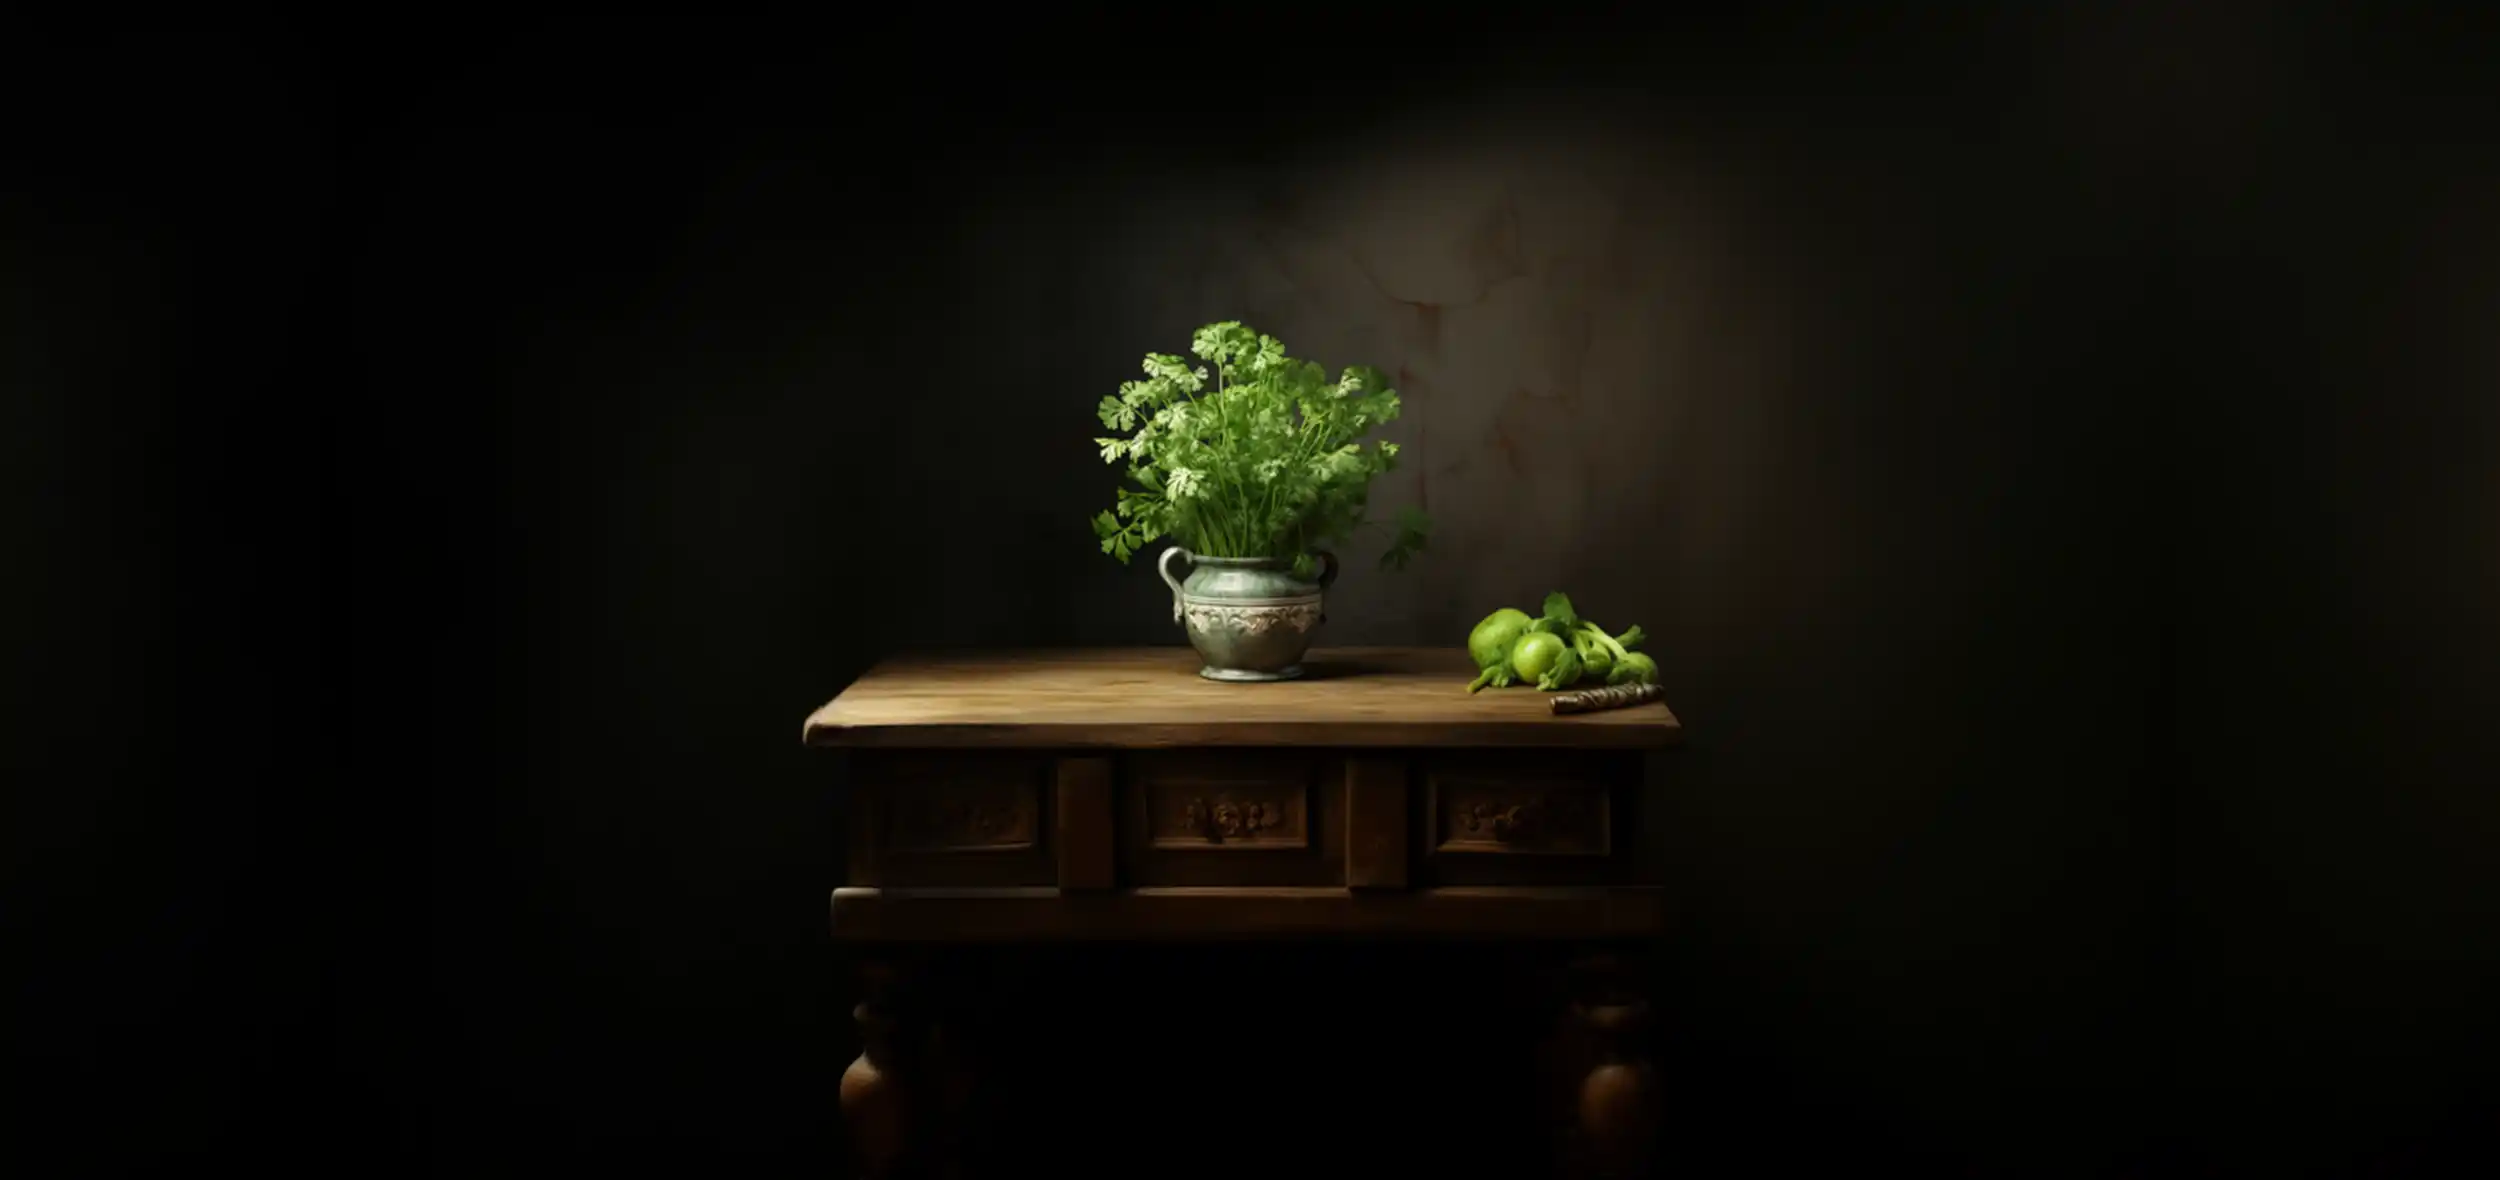 Krause Petersilie in einer Vase, auf Kommode, Gemälde, dunkle Fraben